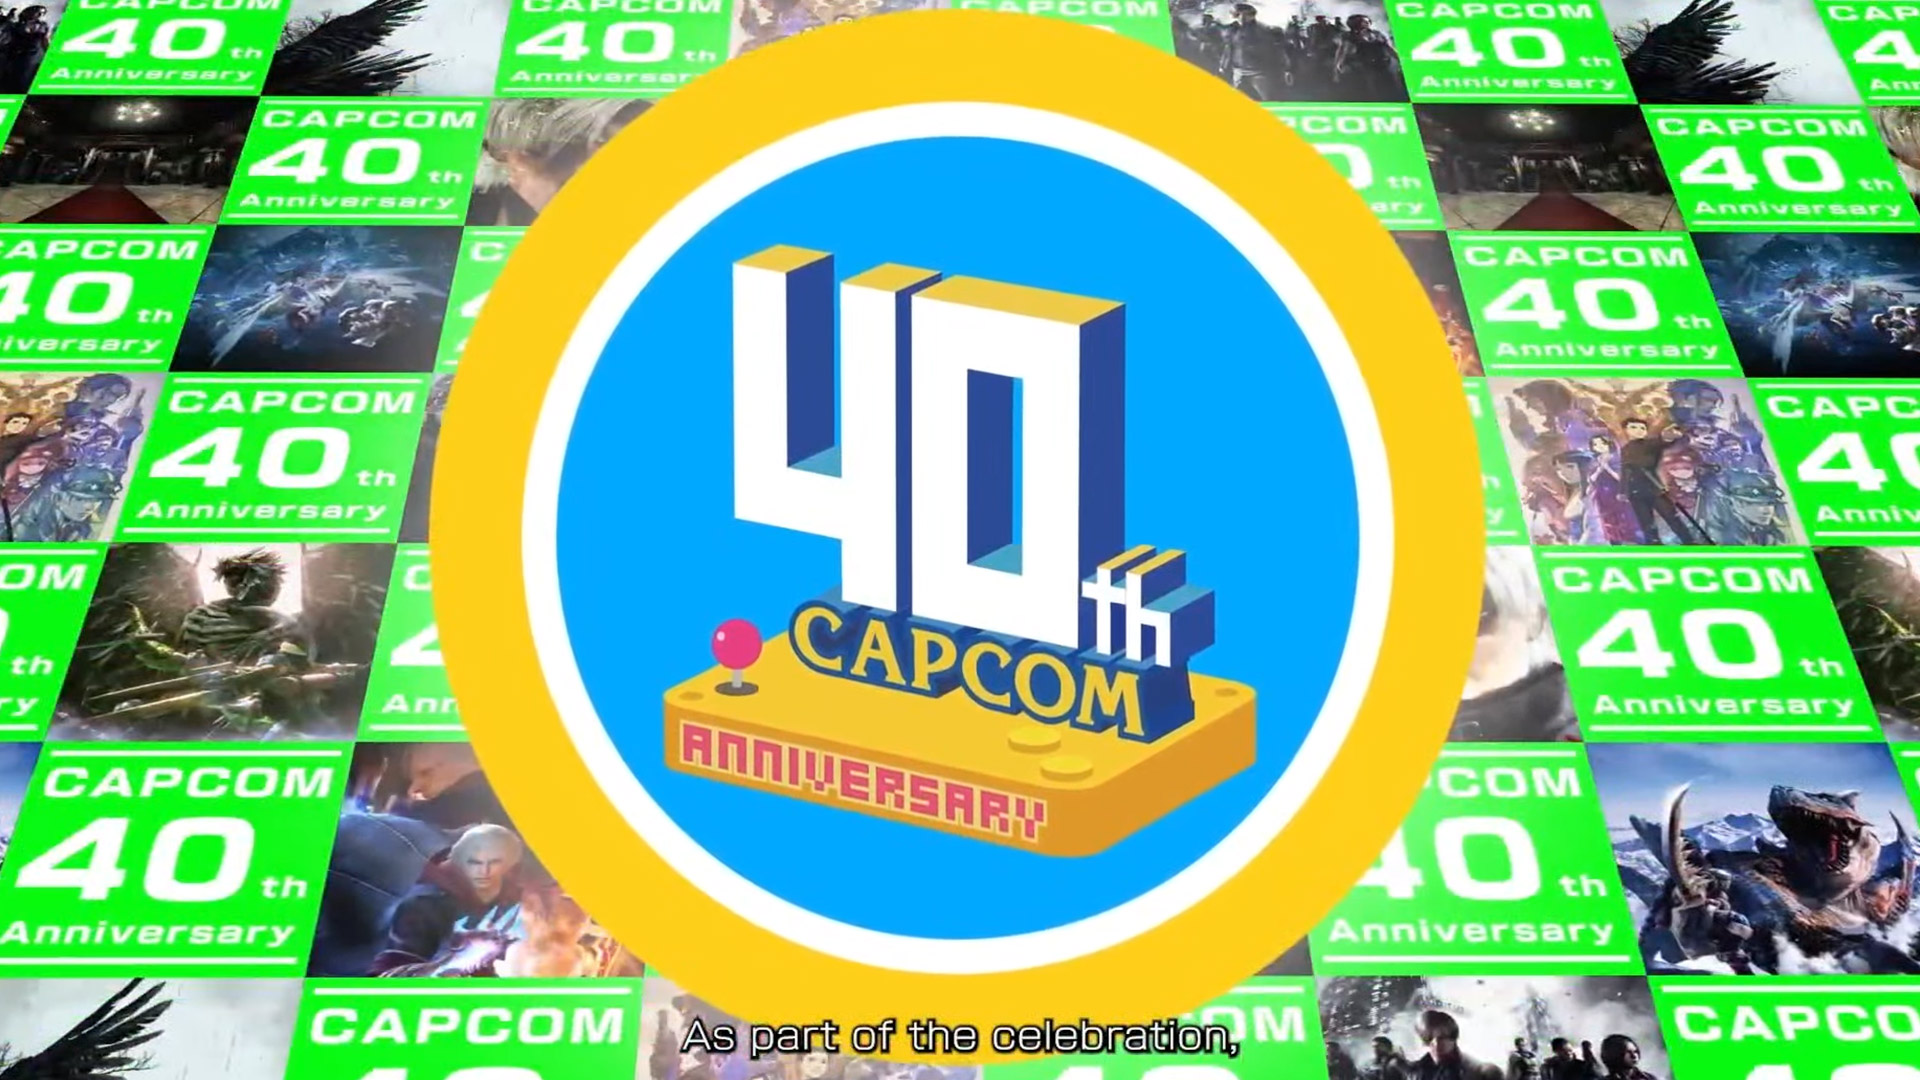 ¡Capcom cumple 40 años! En honor a este acontecimiento, ha lanzado un sitio web con un museo y juegos retro a los que jugar